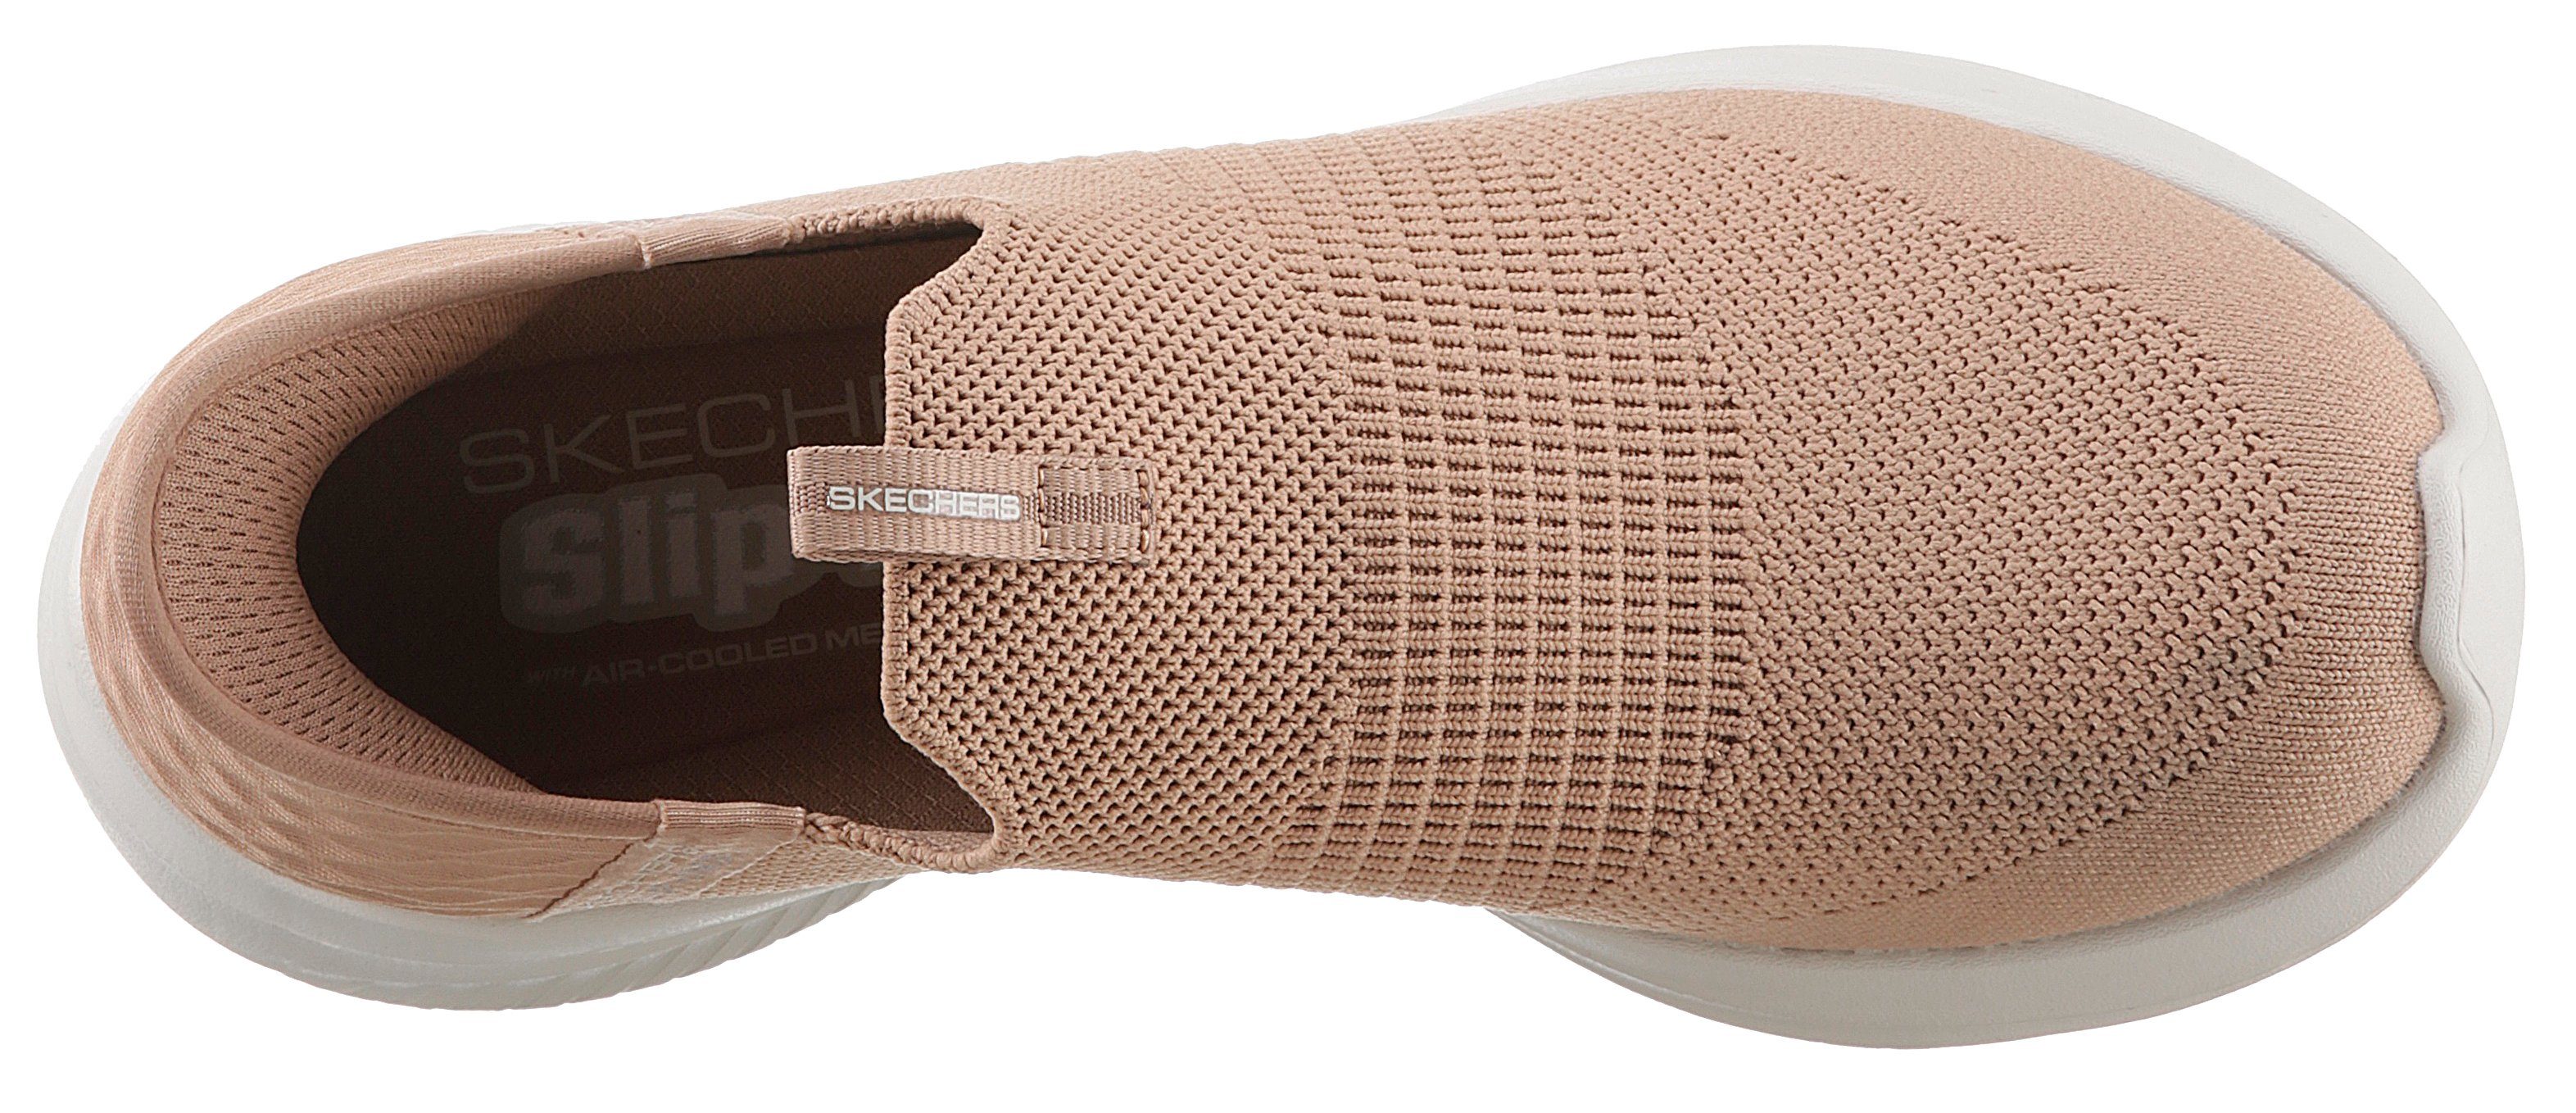 Einstieg Skechers hellbeige 3.0-COZY Slip-Ins für einen STREAK mit Slip-On leichten FLEX ULTRA Sneaker